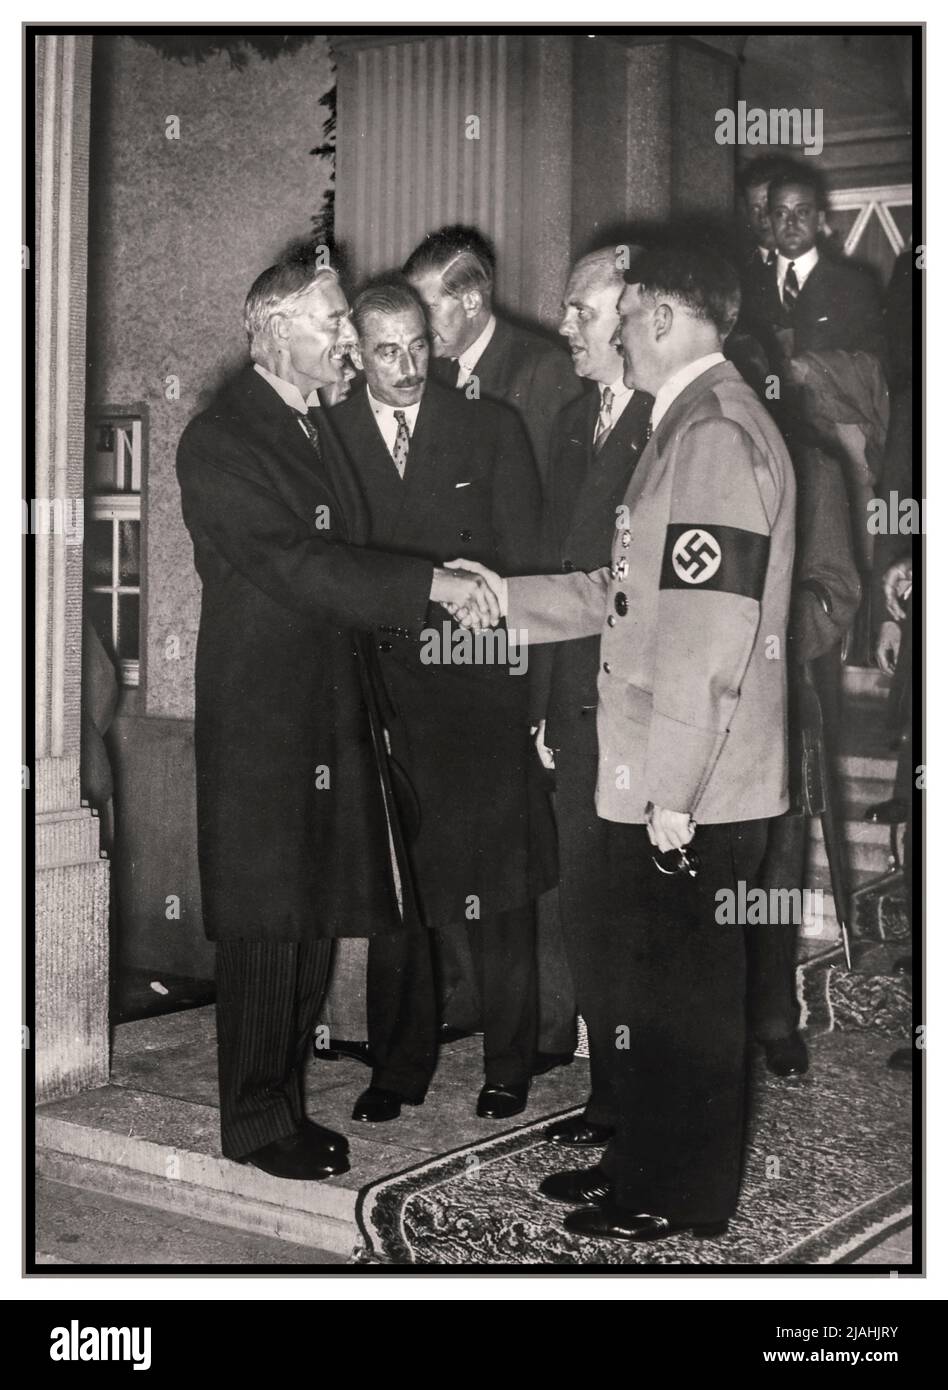 HITLER CHAMBERLAIN 1938 image de la propagande d'avant-guerre de Neville Chamberlain Premier ministre britannique serrer la main et rencontrer nazi Adolf Hitler à Berlin Allemagne 30th septembre 1938 Banque D'Images